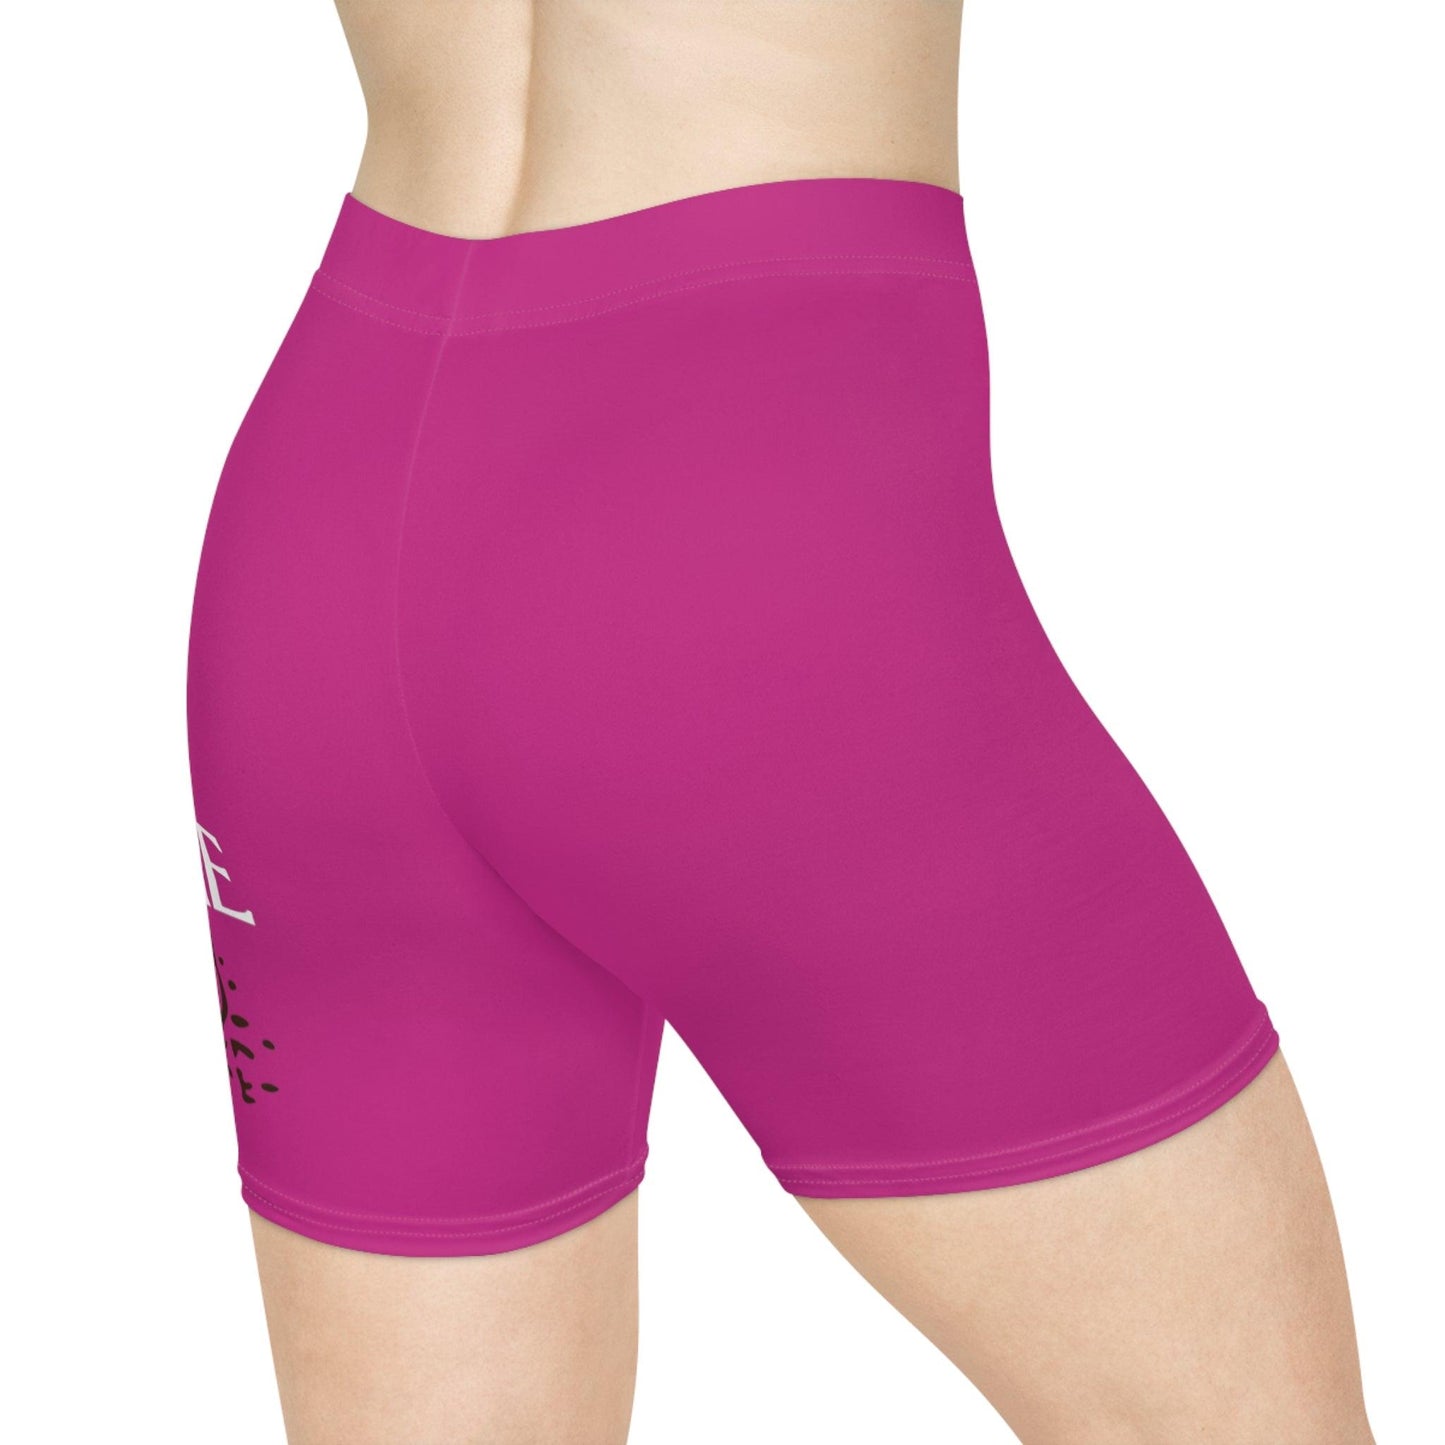 Pink Women's Biker Shorts